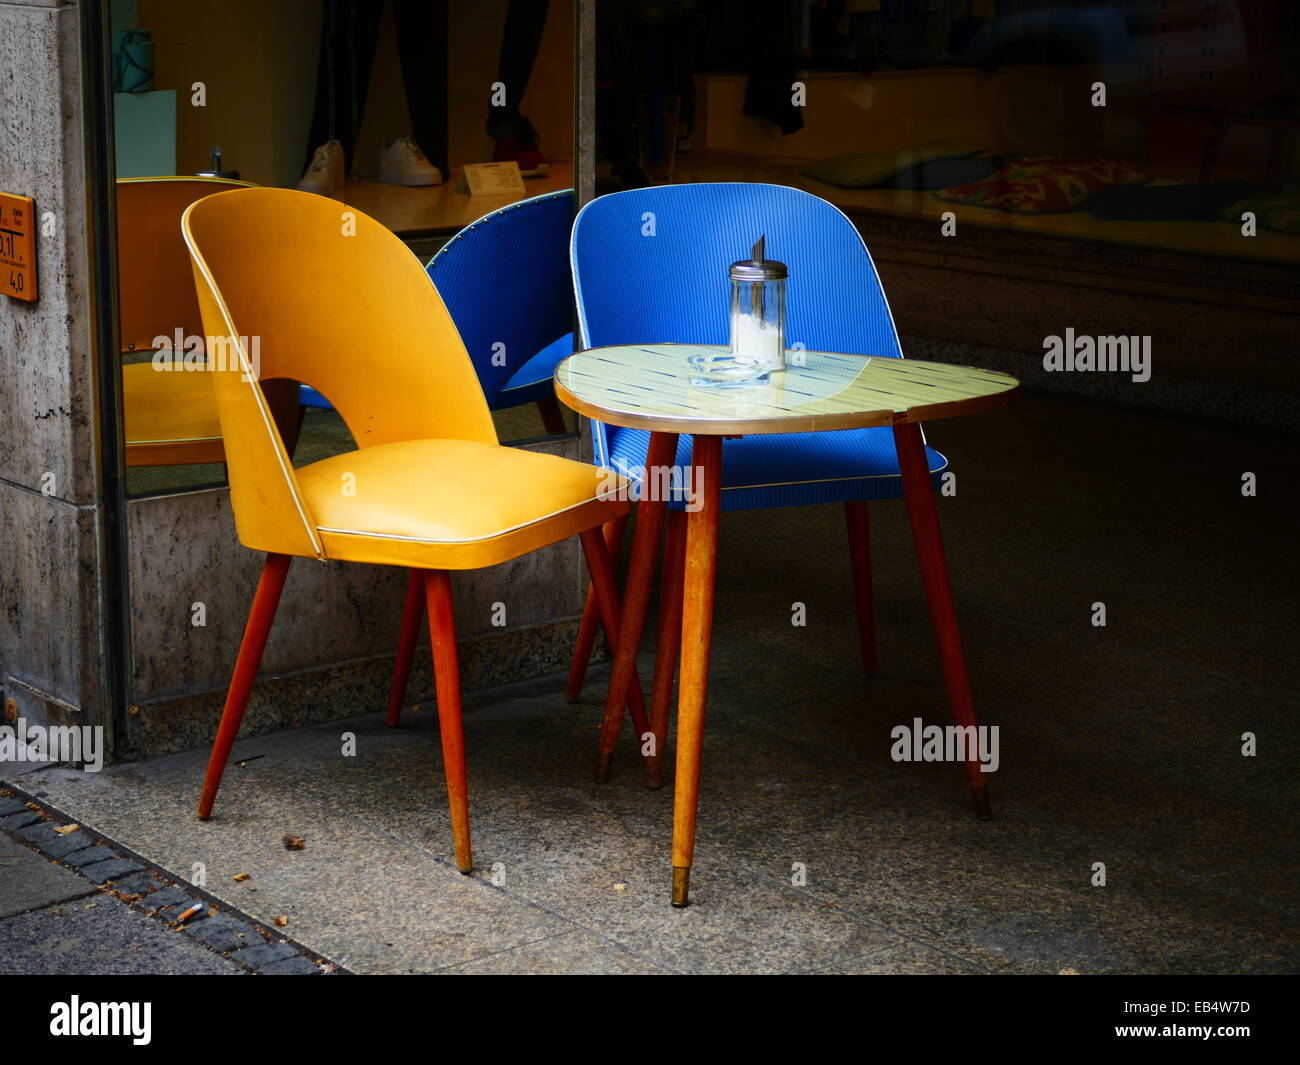 Nostalgie Nostalgie Table et chaise at Sidewalk Café Banque D'Images